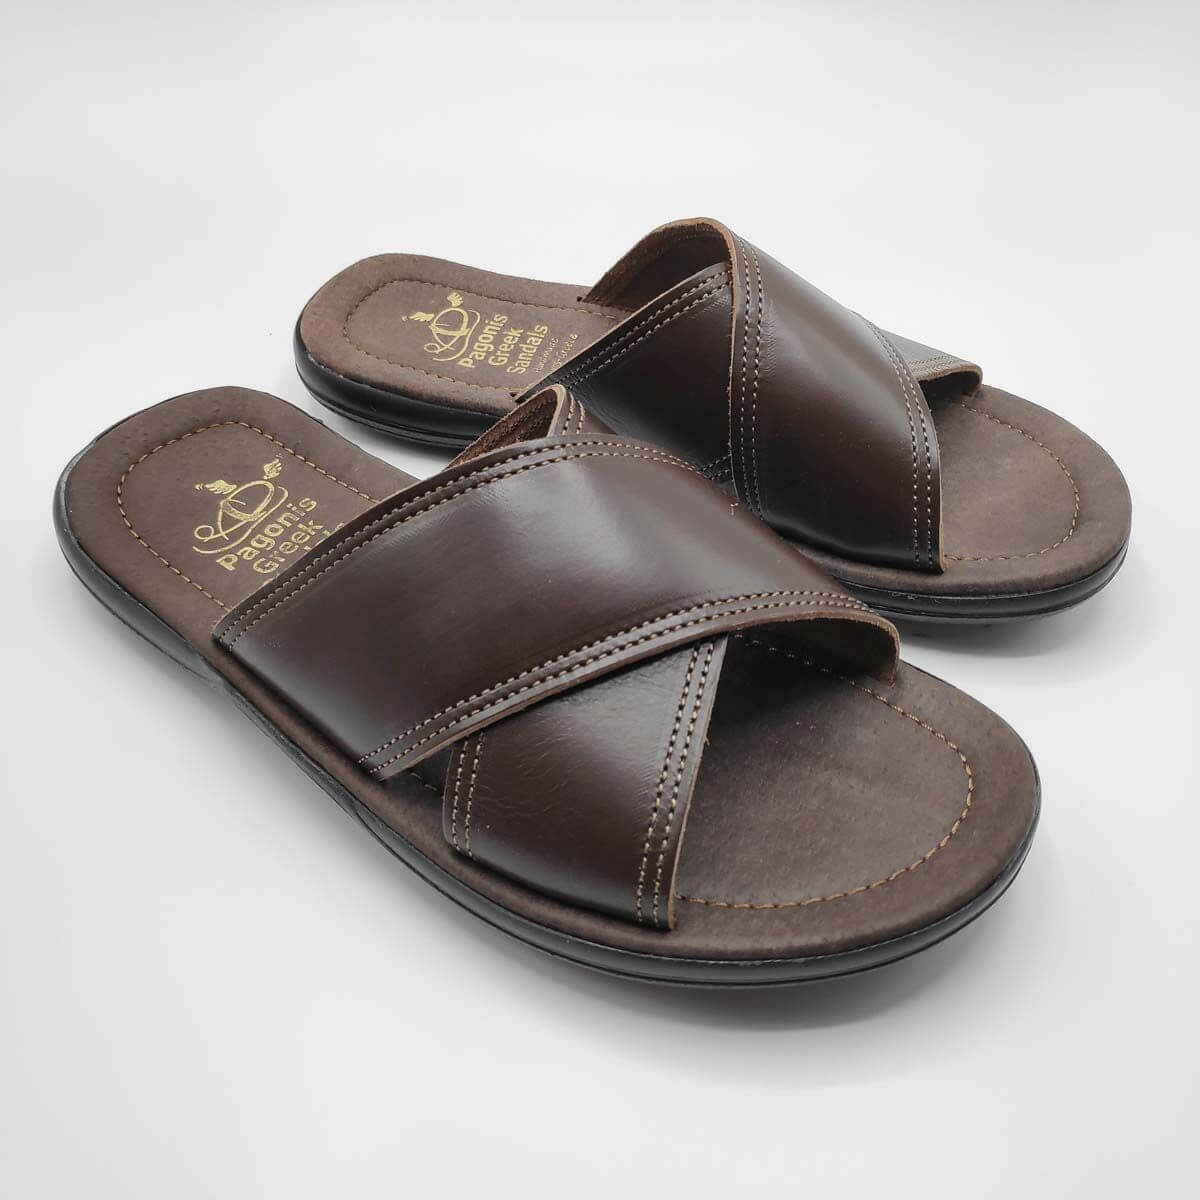 X Crossover Sandals Comfort Men Brown